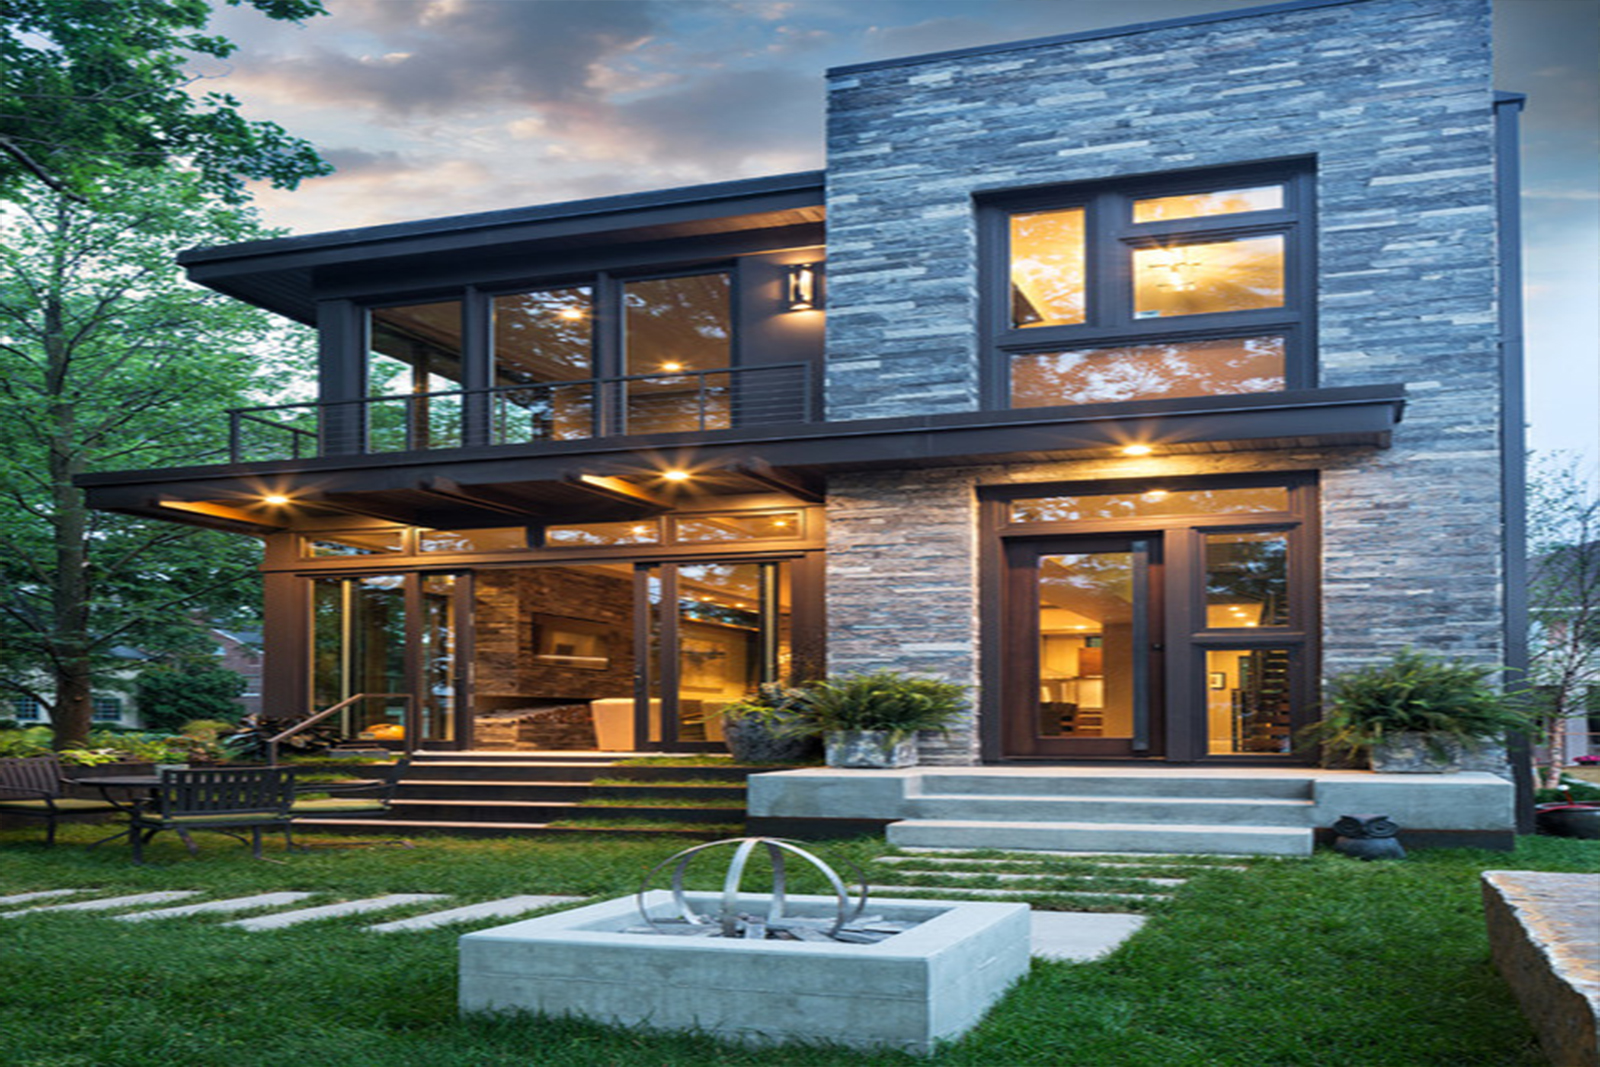 Описание современного дома: Современный стиль в архитектуре частного дома — Roomble.com